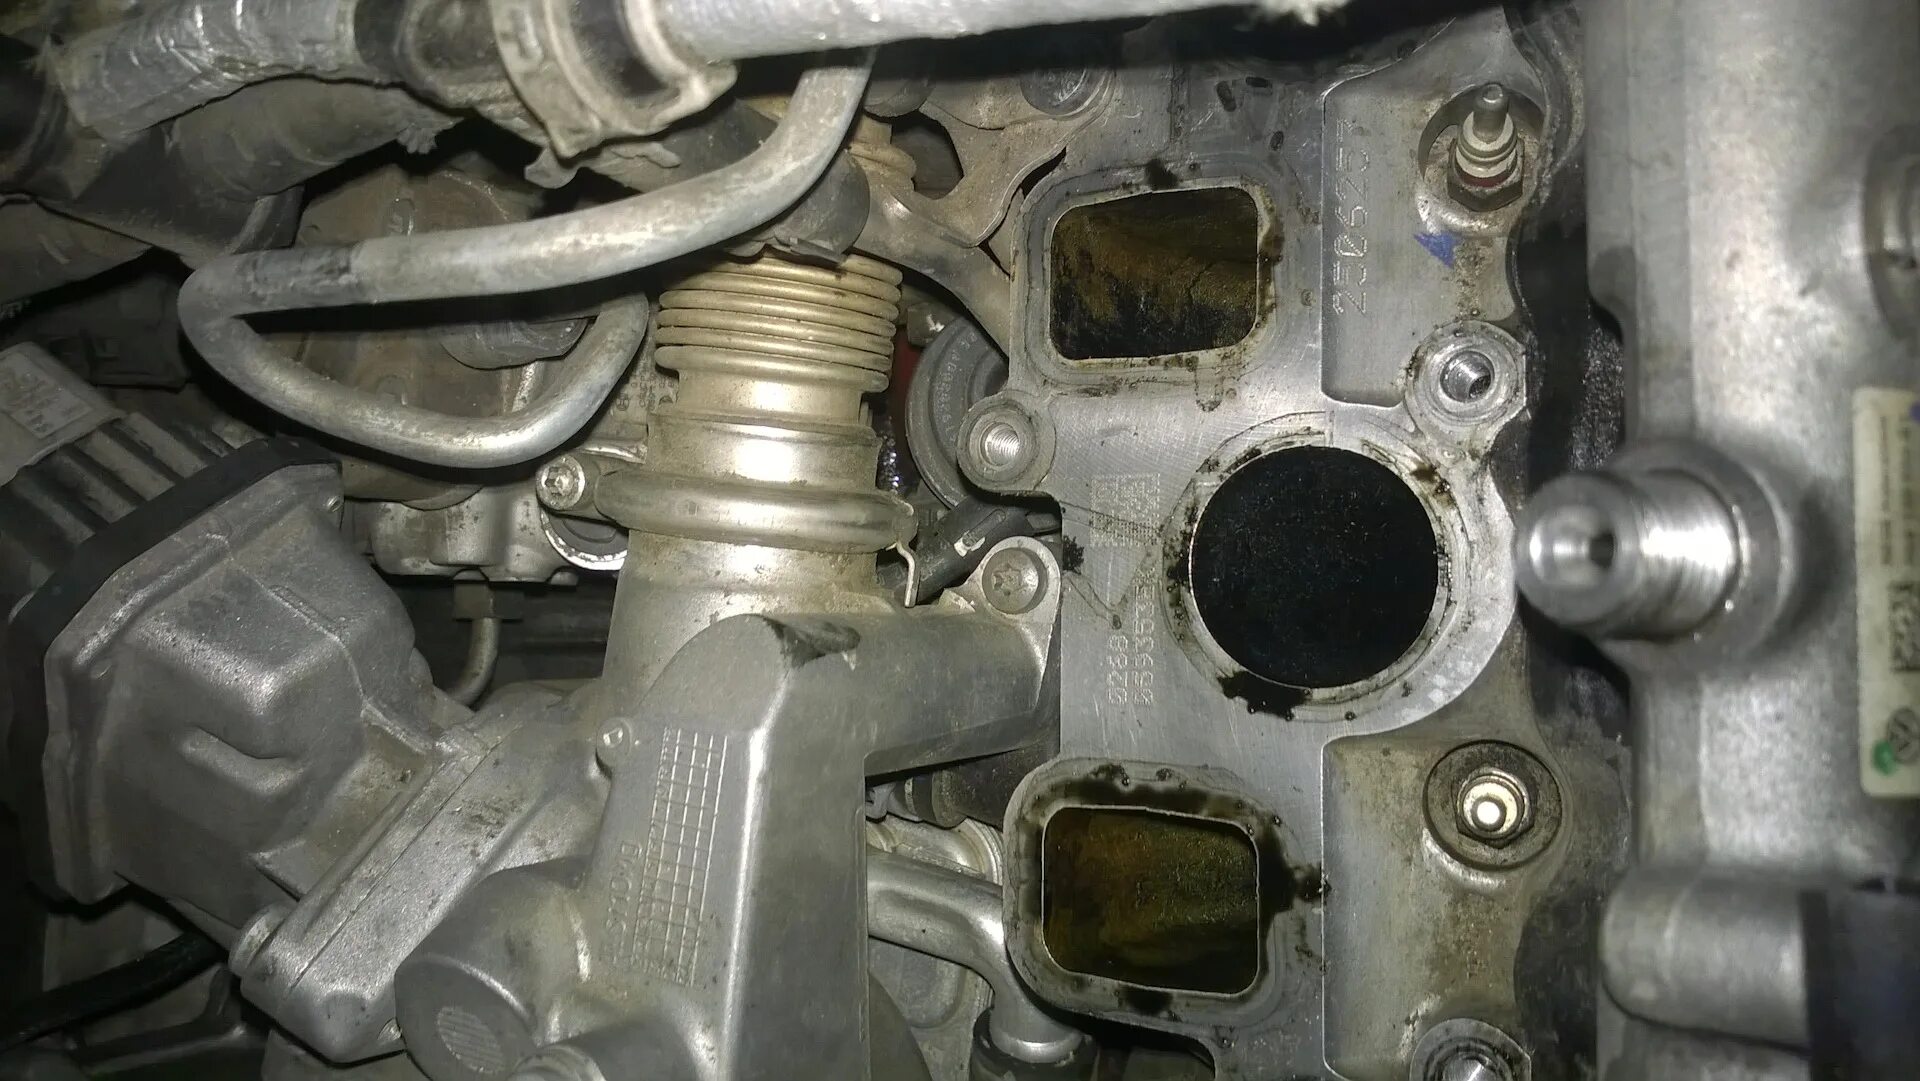 Заглушка блока цилиндров Фольксваген Туарег 3.0 дизель. Подтеки масла двигателя Туарег 2.5 дизель 2006. 3.0 TDI капиталка. Течь антифриза Audi q7 3.6. Течь масла туарег